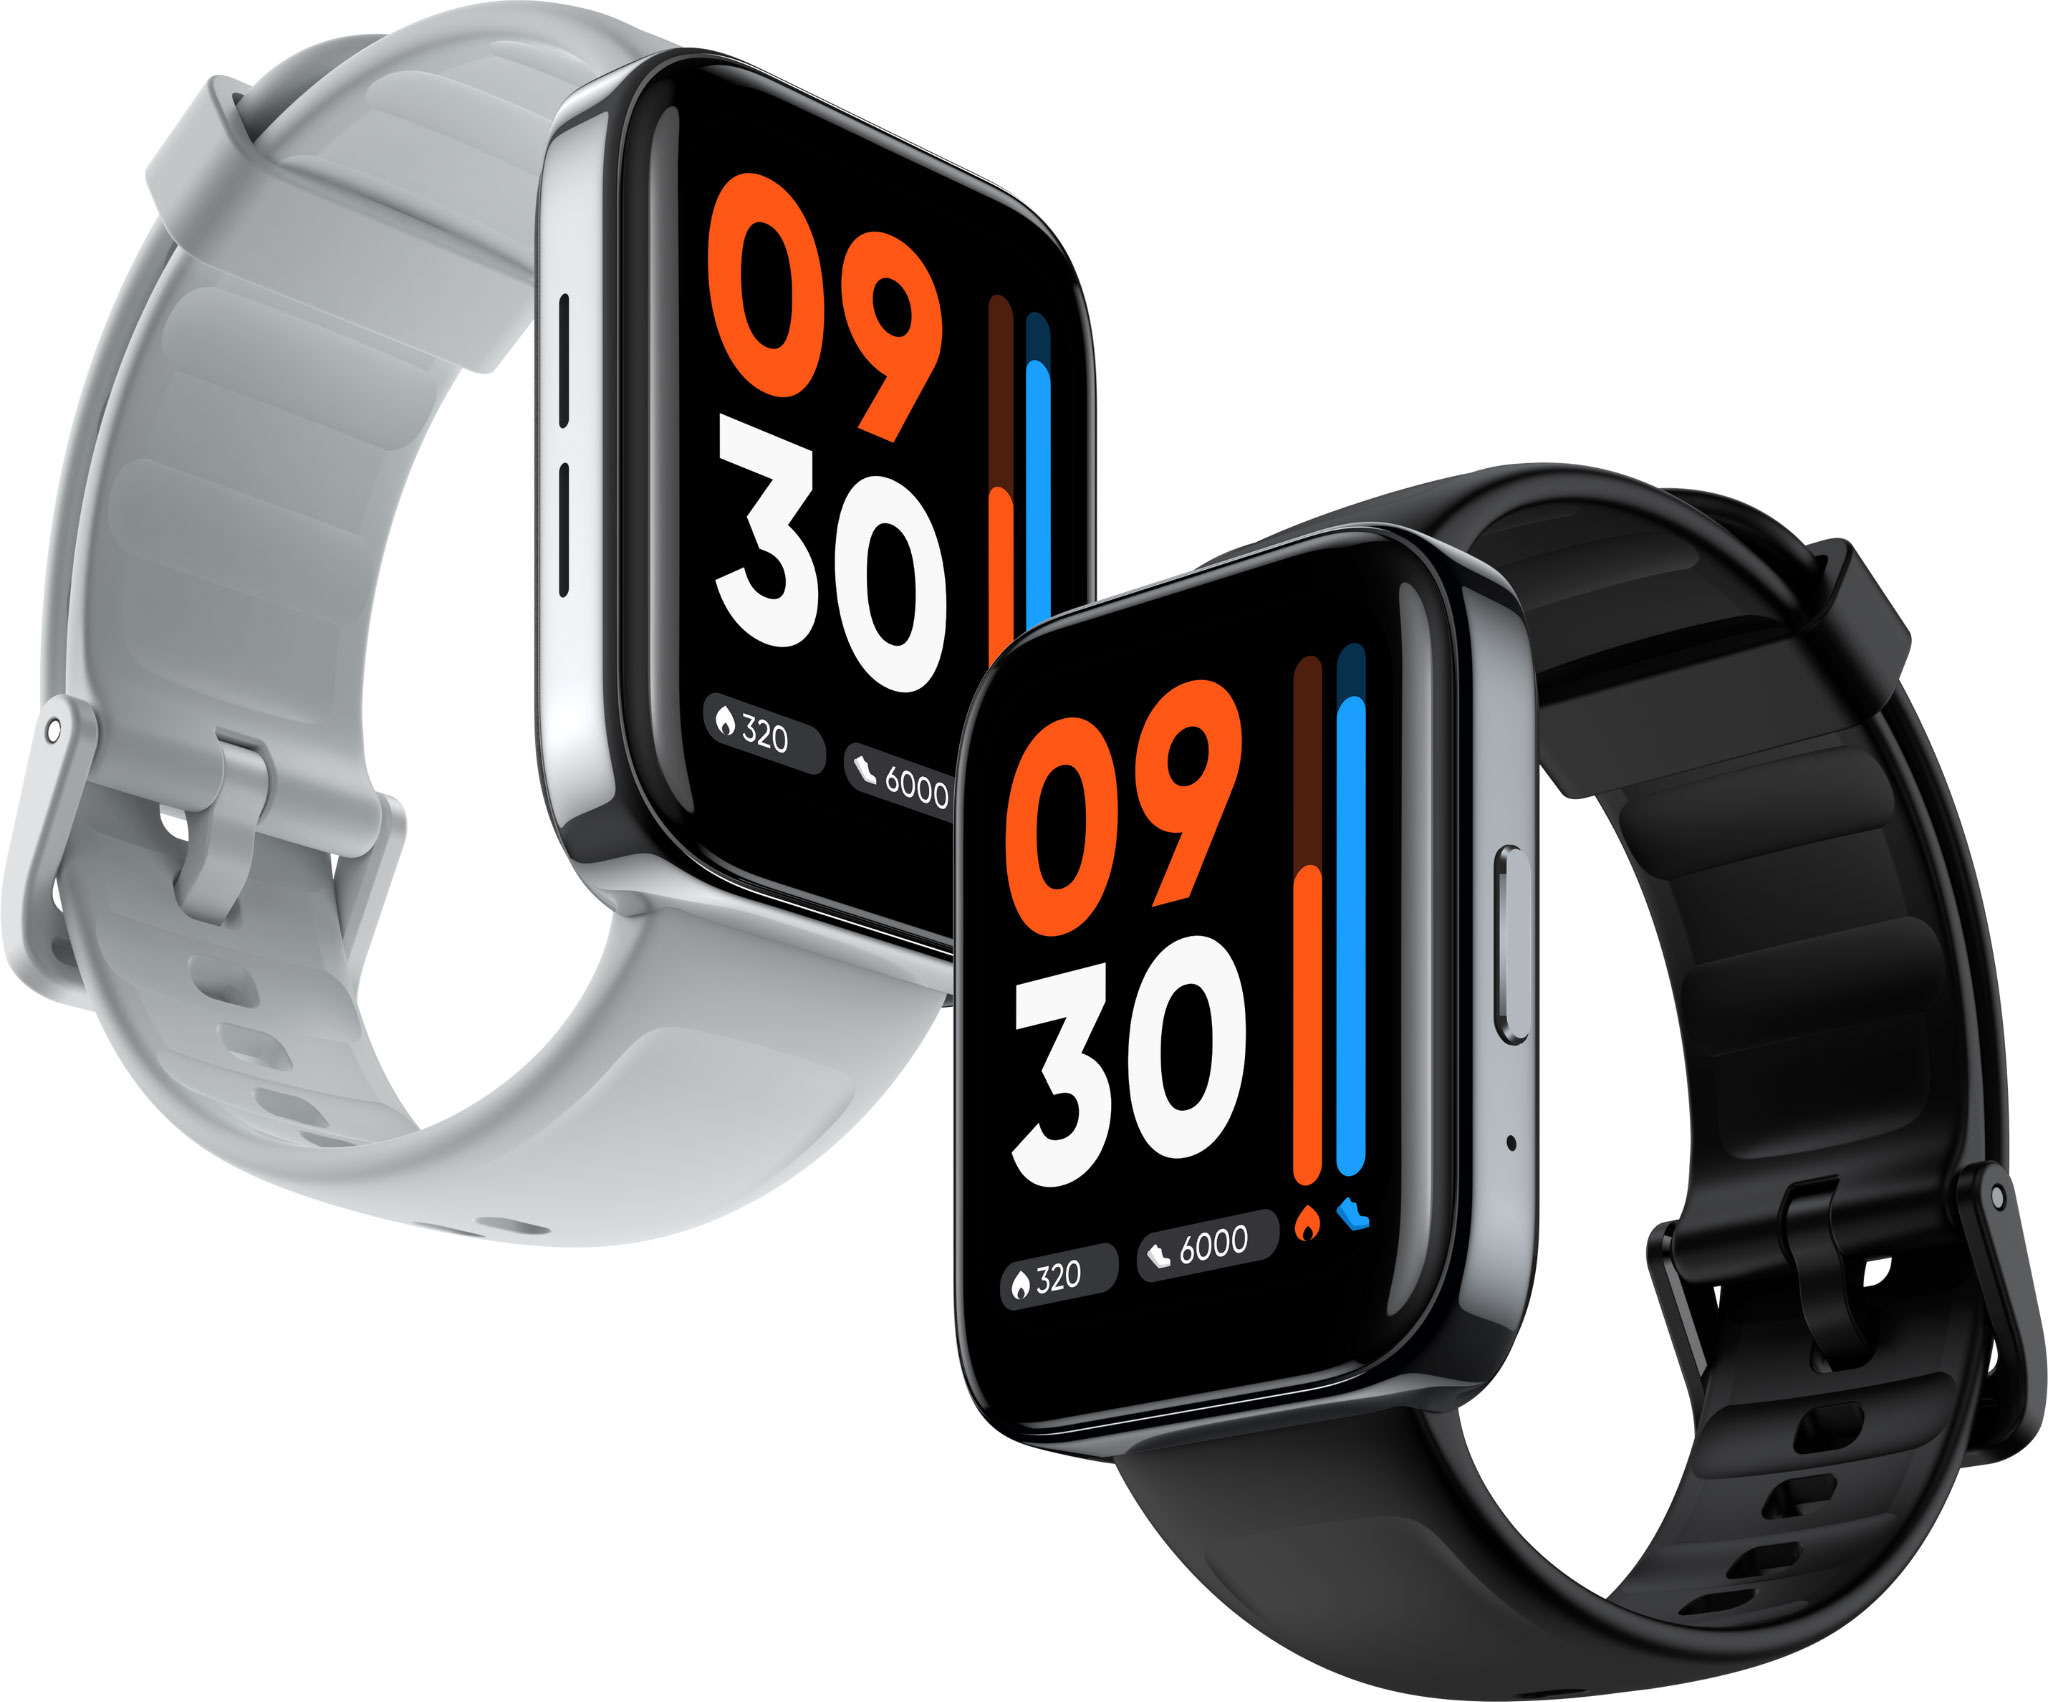 Smartwatch realme Watch 3 ra mắt thị trường Việt Nam - Nghe gọi ngay trên đồng hồ, màn hình ấn tượng